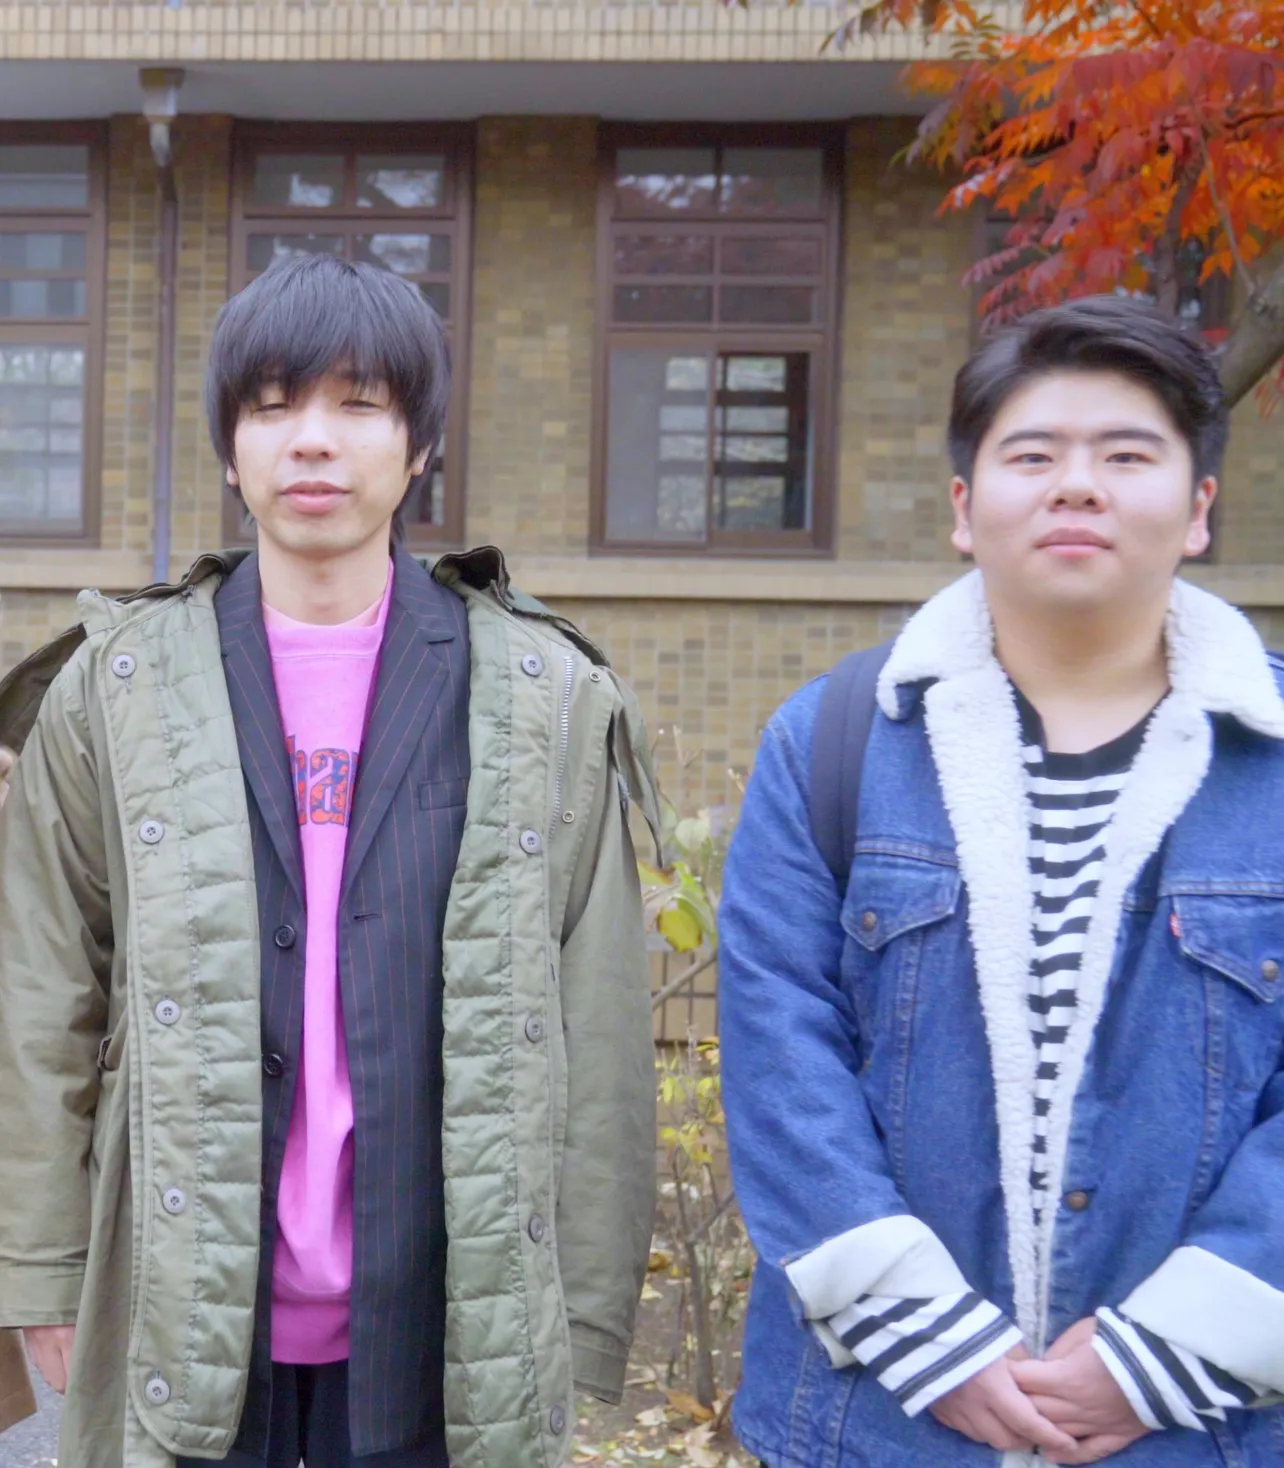 「卒業バカメンタリー」出演中の前田航基(右)と吉田靖直(左)